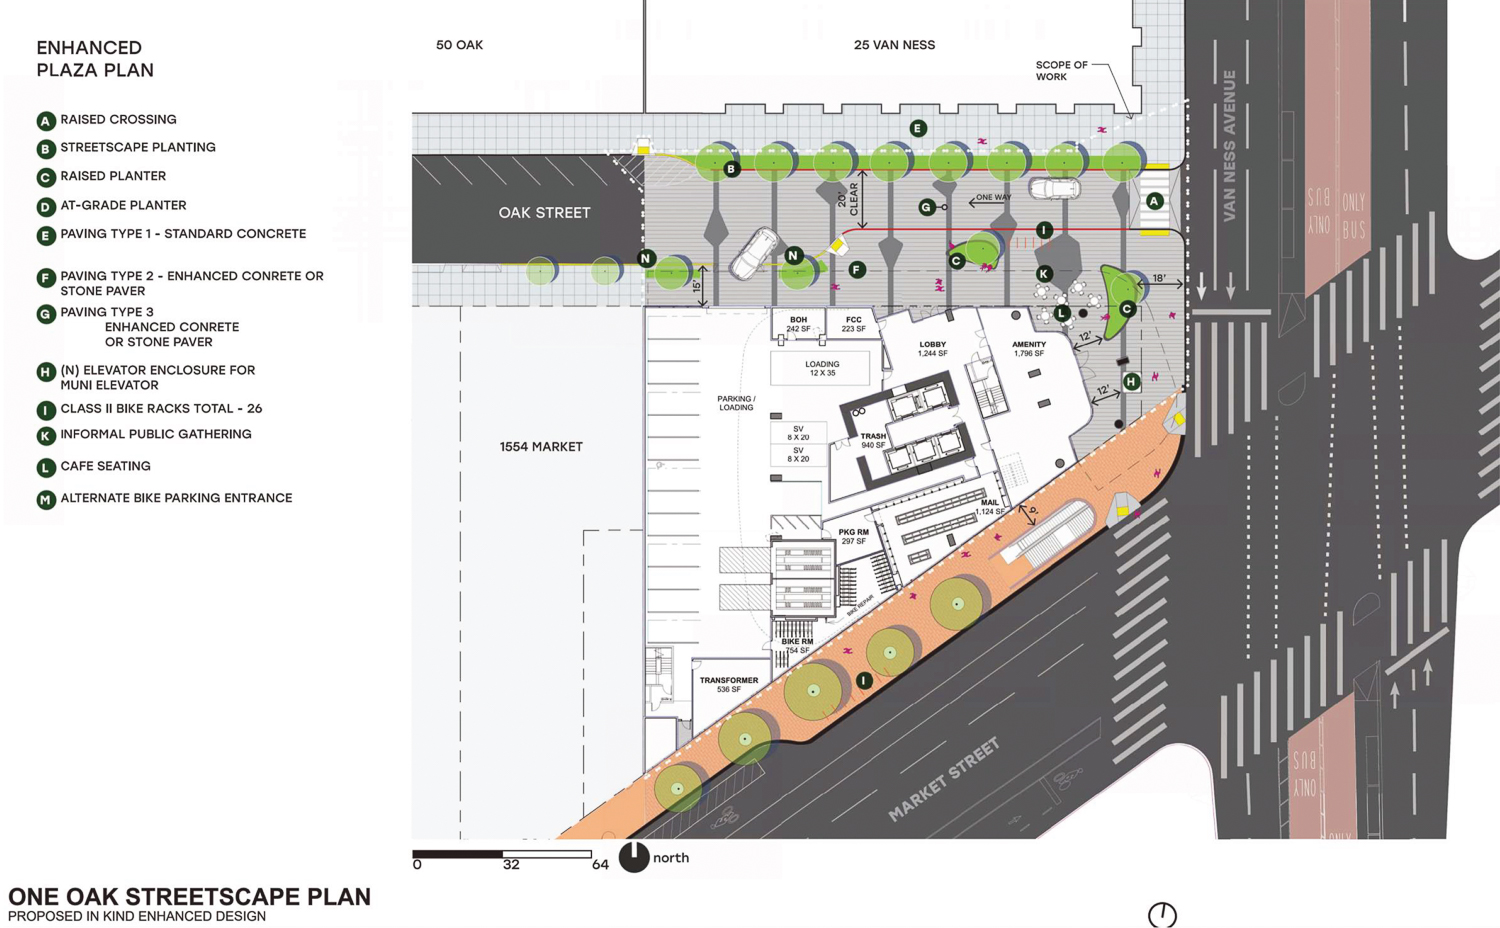 One Oak streetscape plan, rendering by Solomon Cordwell Buenz